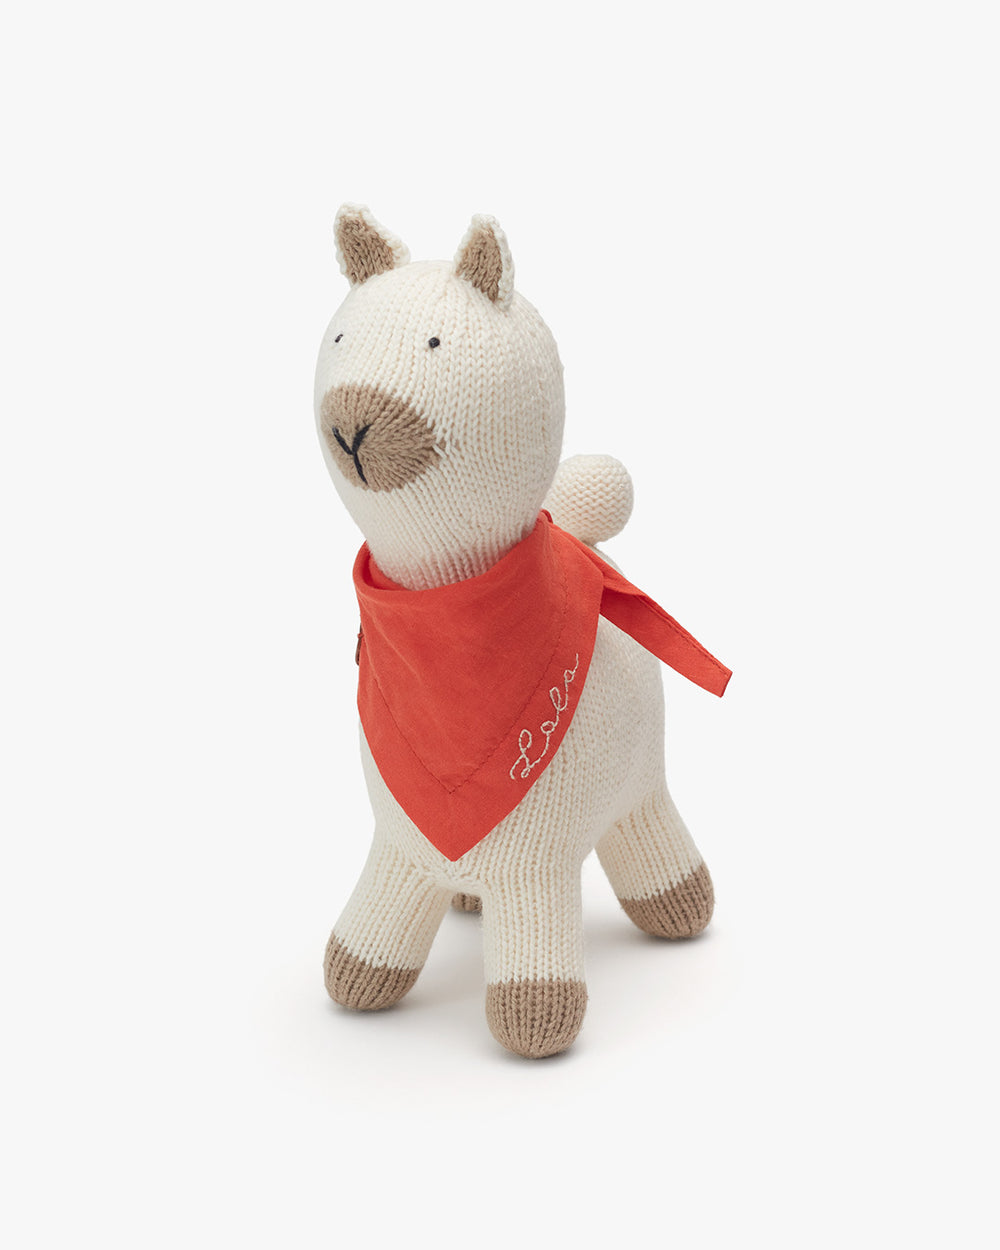 Stuffed alpaca with a bandana around its neck standing upright.